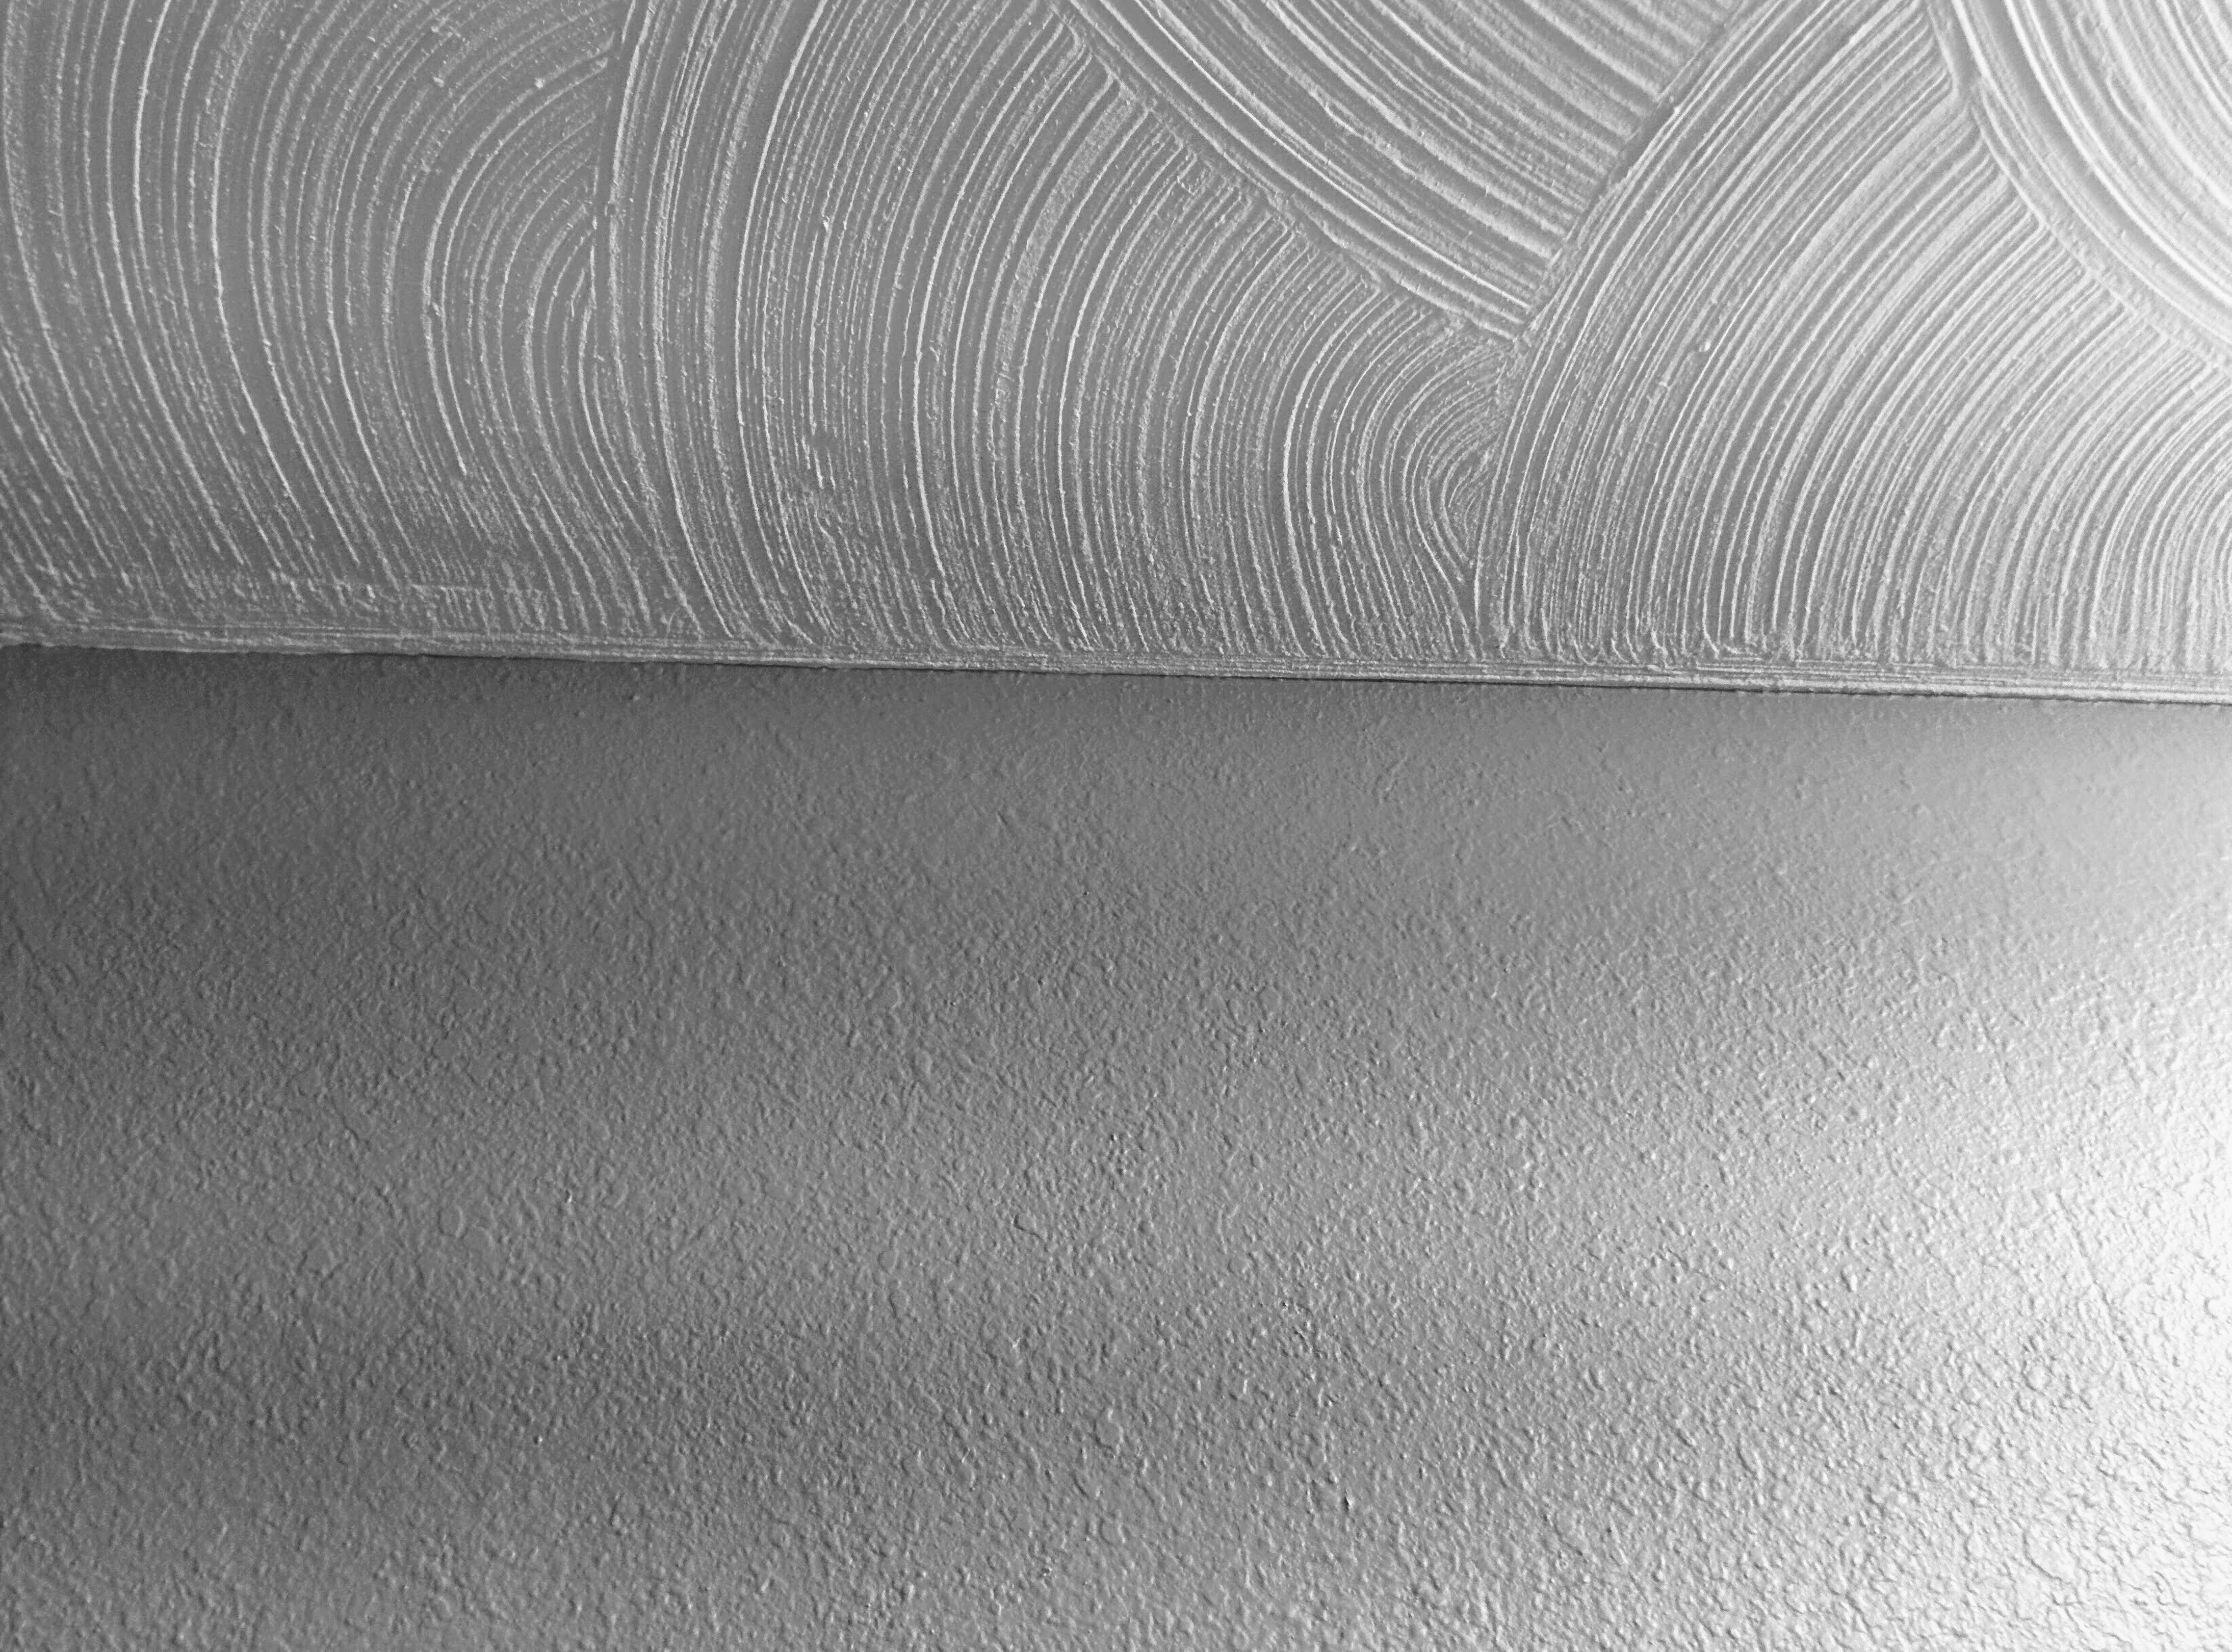 Fotografia de textura de espirrar drywall no tecto e textura de espirrar na parede